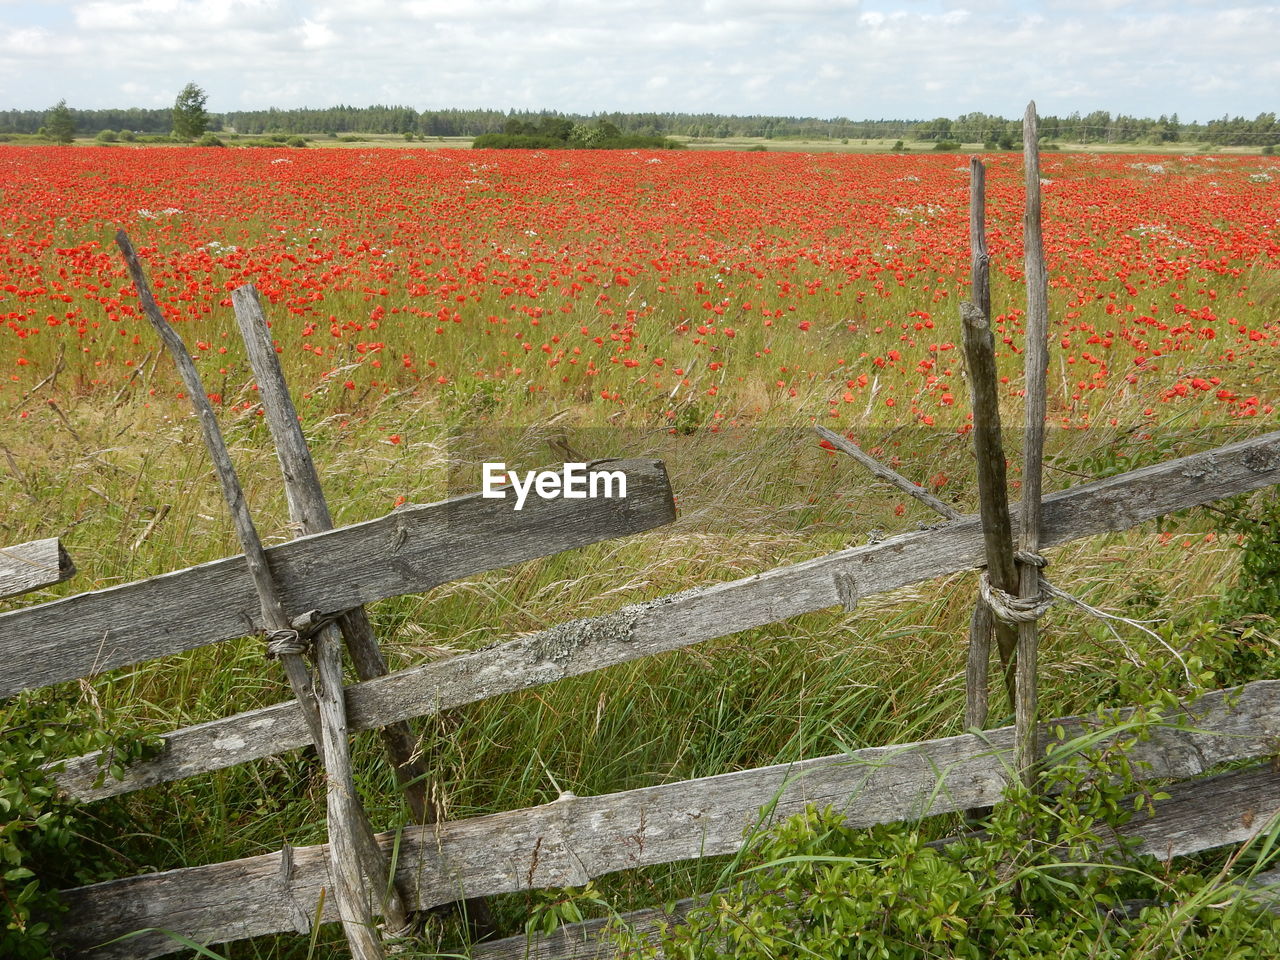 Wooden fence by flowers in field